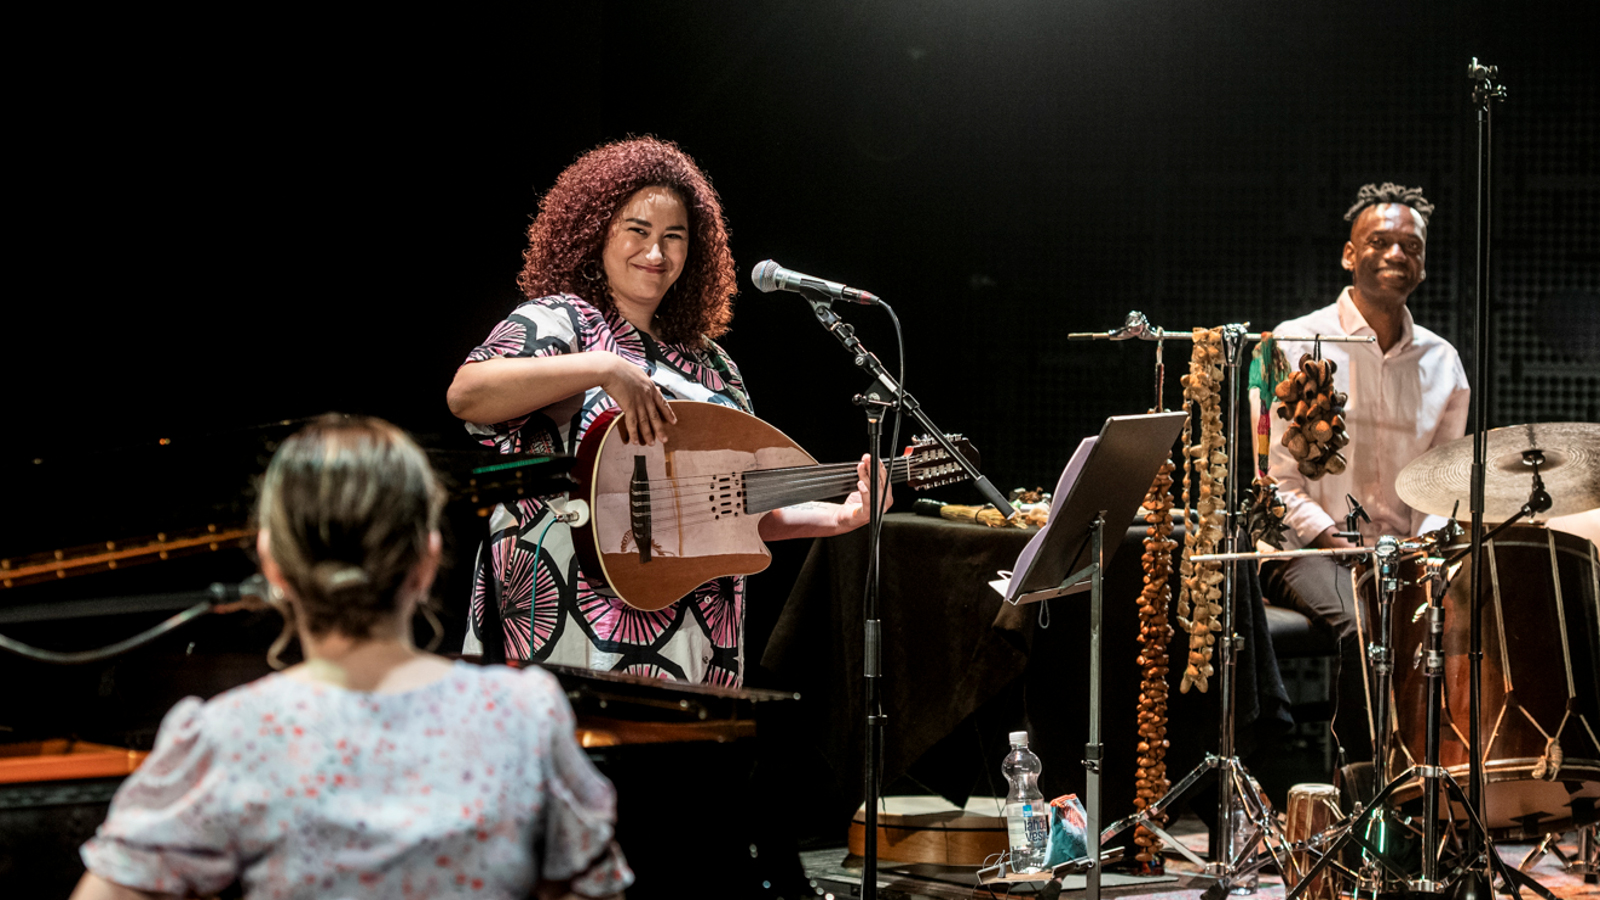 Kuvassa on esiintymislavalla soittamassa tummaa taustaa vasten kitaraan kiharatukkainen nainen ja hänen vieressään mies haitari jaloissaan.  Vasemmalla etualalla selin nainen soittamassa pianoa.